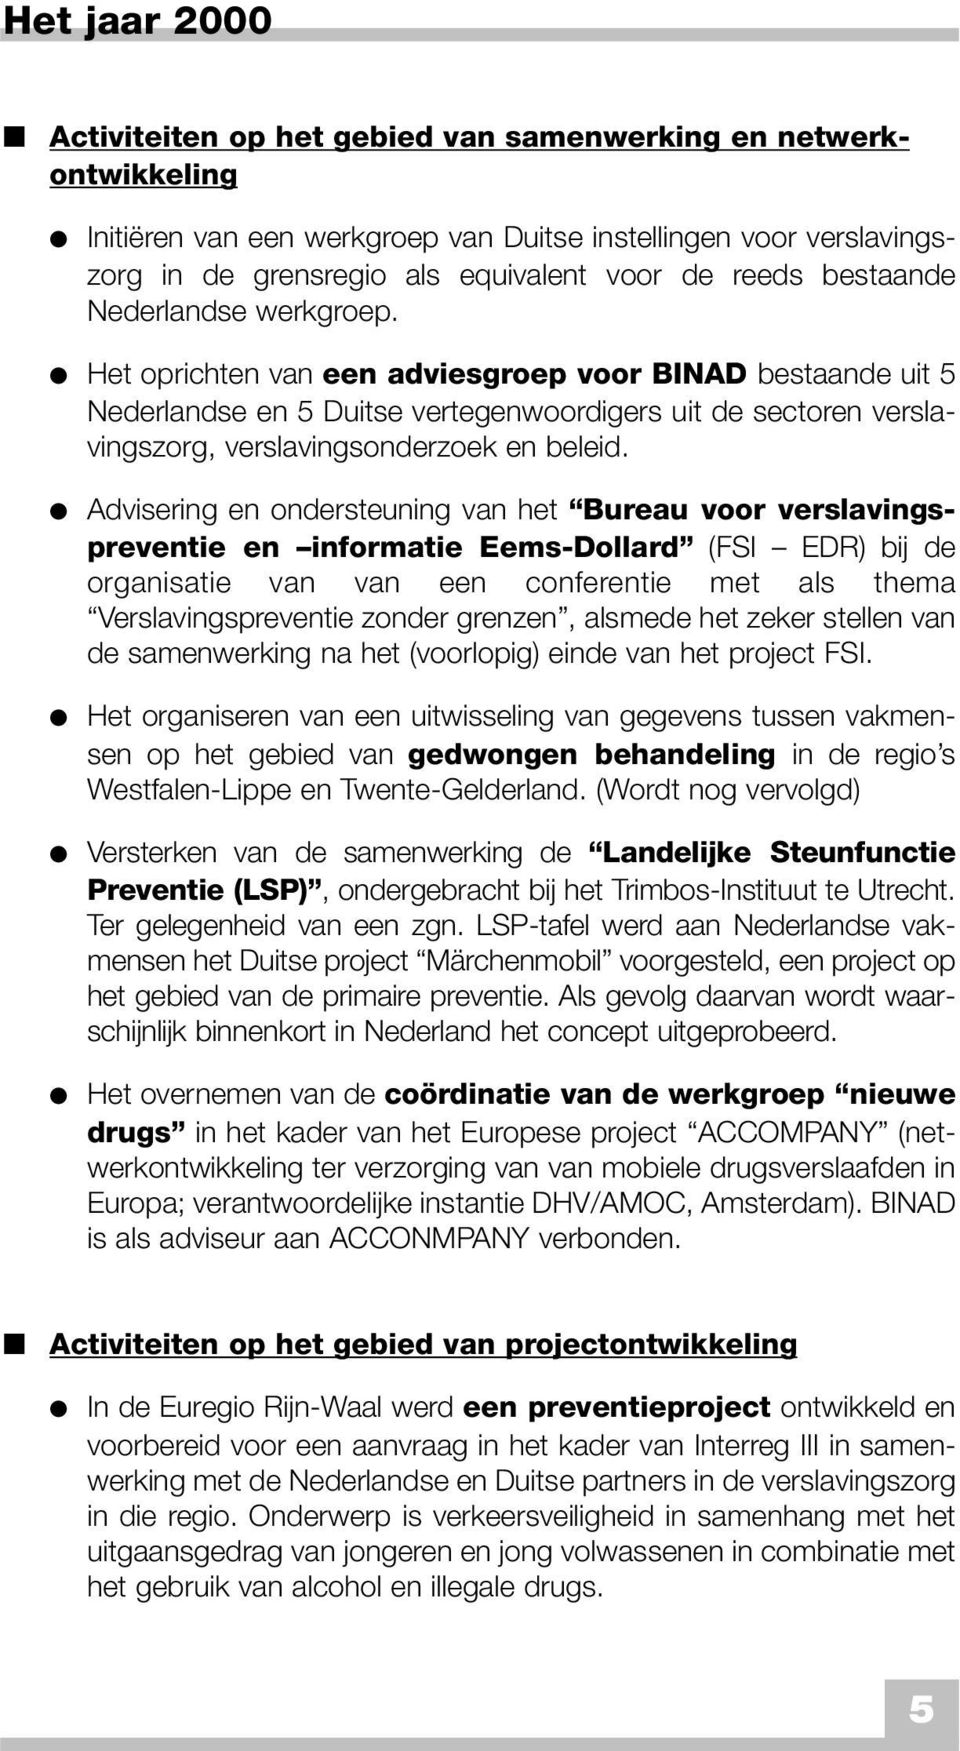 Het oprichten van een adviesgroep voor BINAD bestaande uit 5 Nederlandse en 5 Duitse vertegenwoordigers uit de sectoren verslavingszorg, verslavingsonderzoek en beleid.